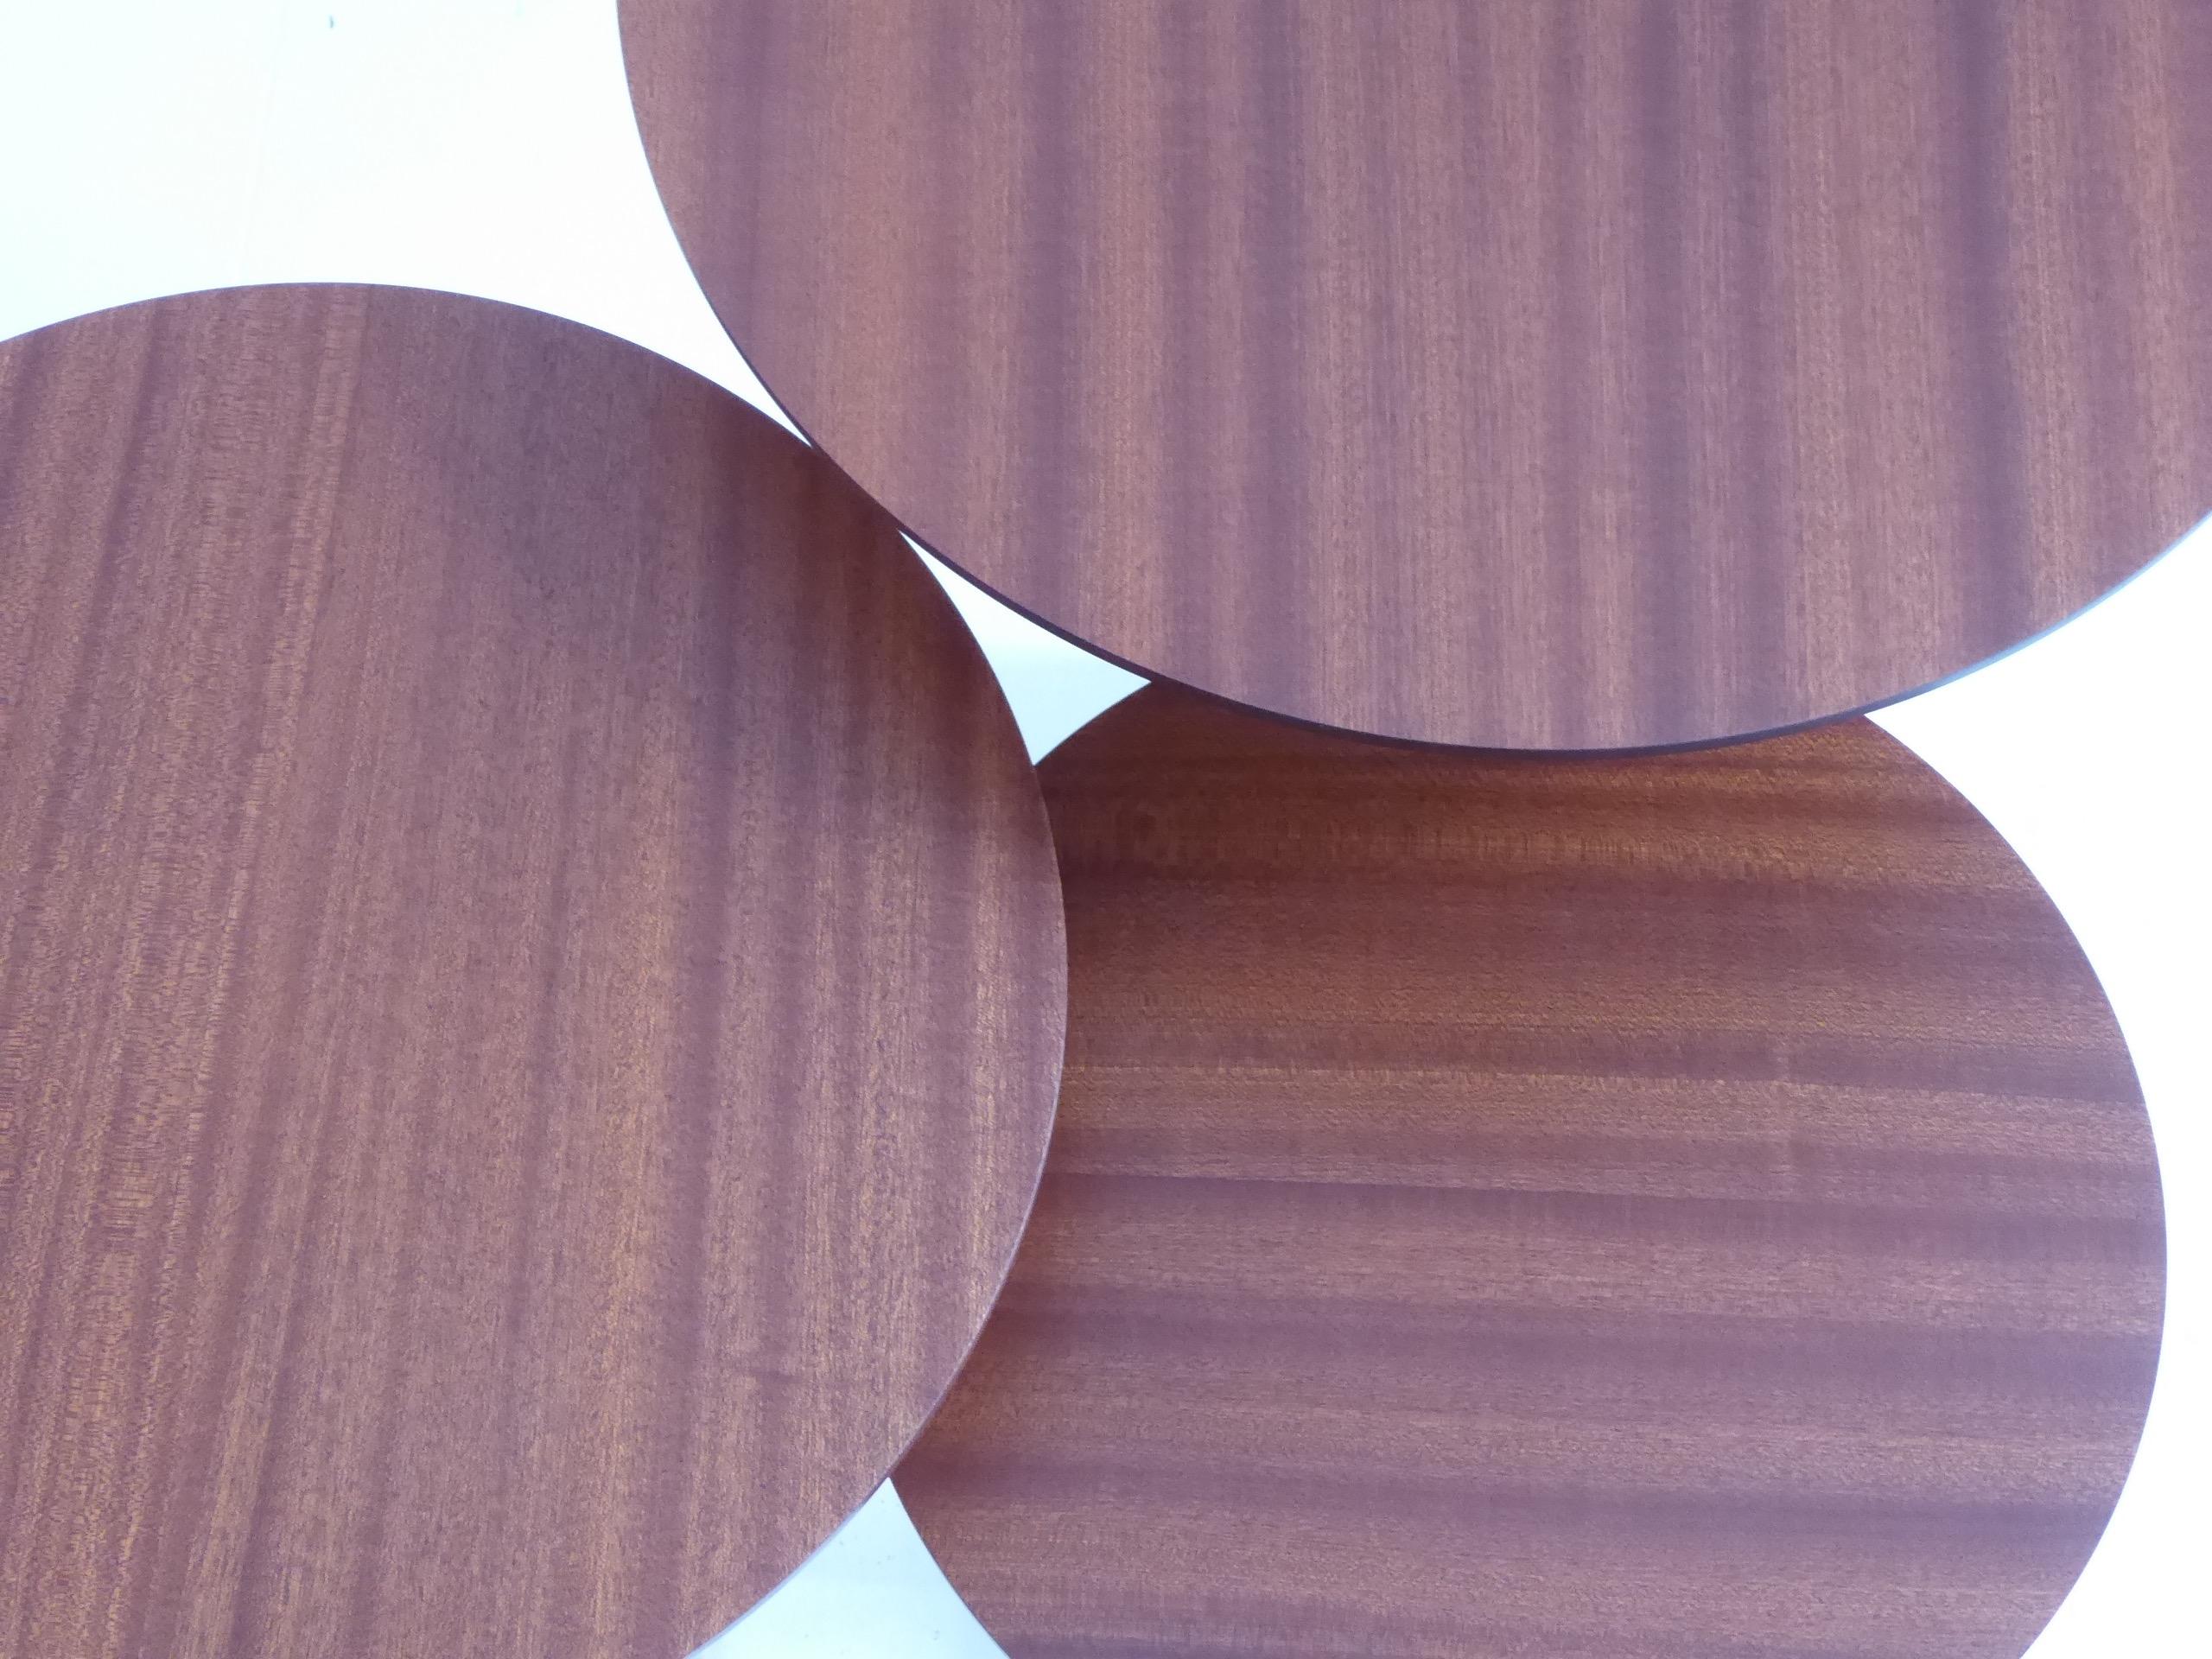 Oberflächen-Tabellen

Diese Kollektion zierlicher Tische kombiniert fein geformte Platten, spitz zulaufende Stiele aus Bronzeguss und Betonsockel, um jeden Raum zu vervollständigen. Die gedrechselten Holzplatten sind wunderschön geformt und